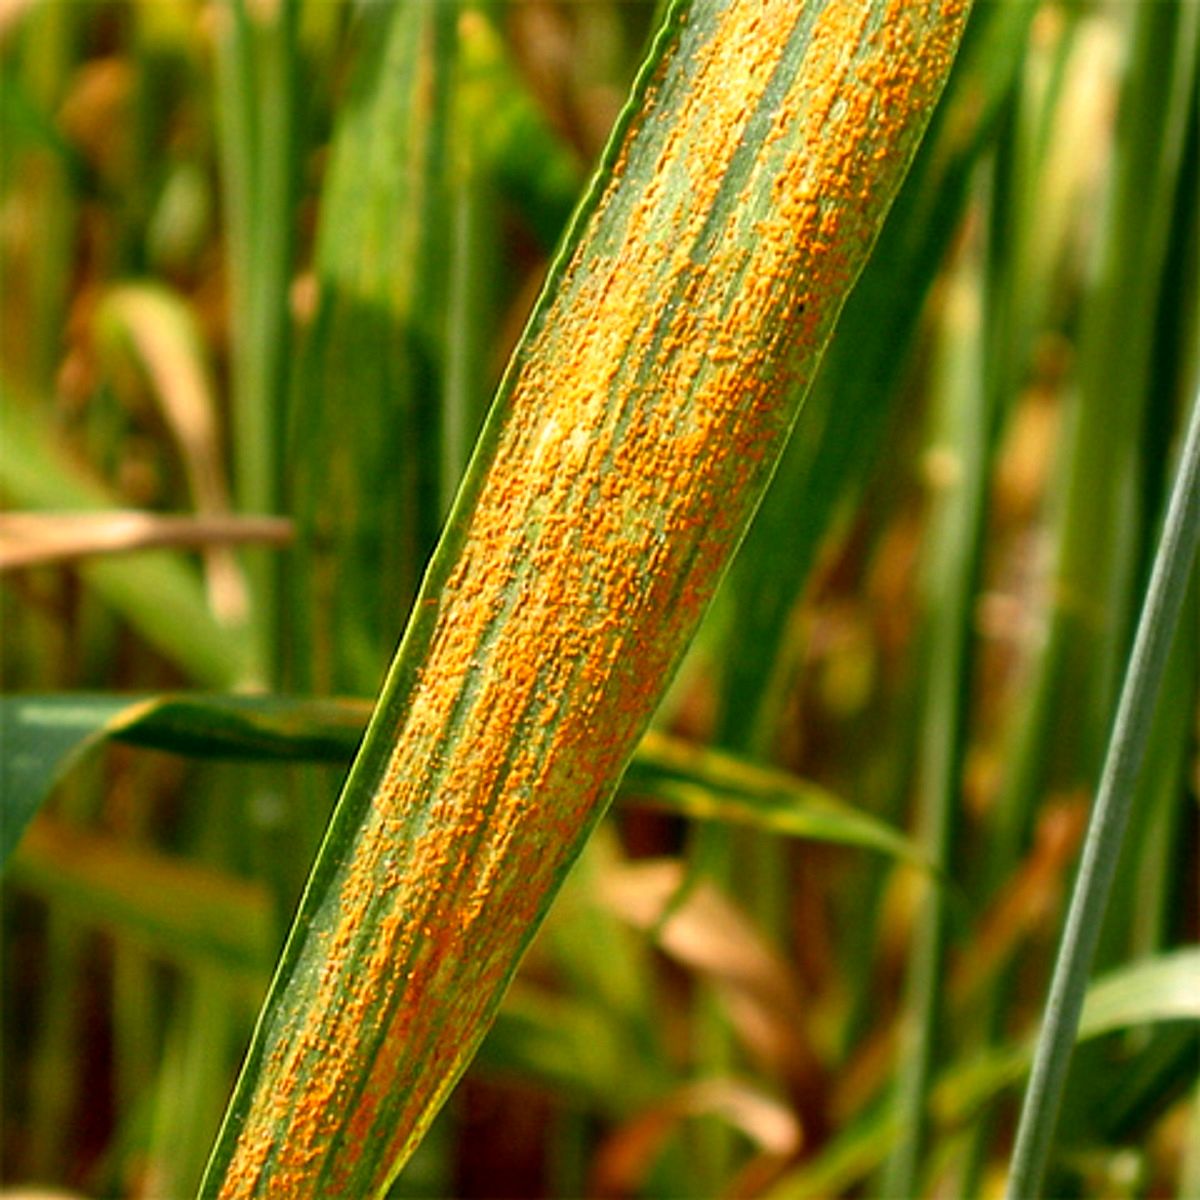  خبر مهم برای کشاورزان / بیماری زنگ زرد گندم چیست؟